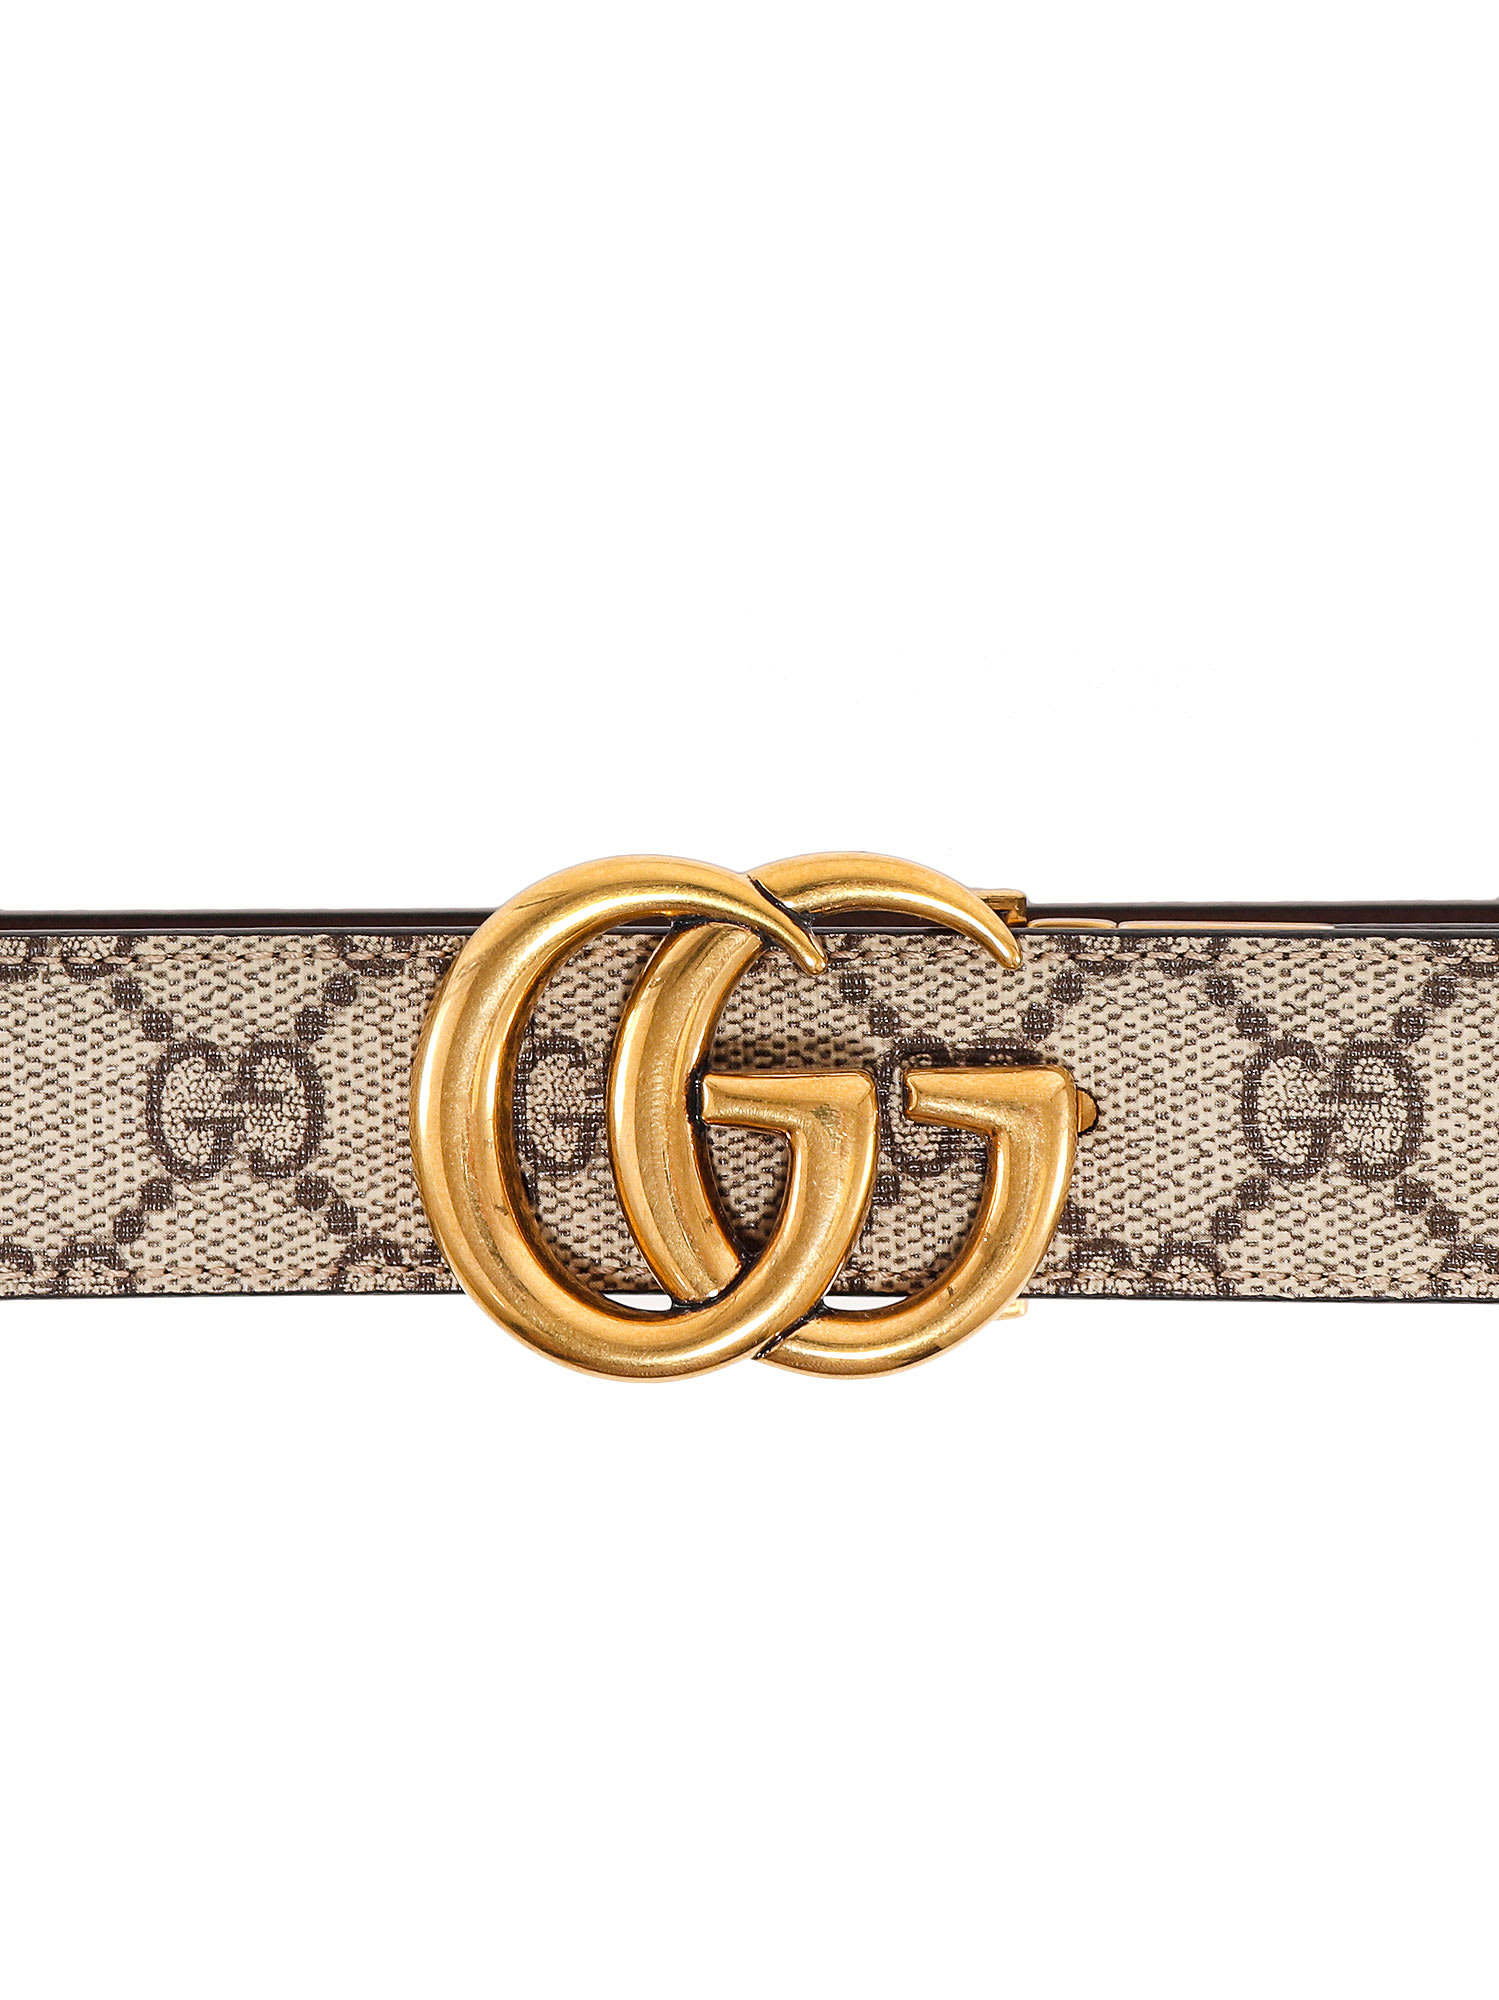 Shop Gucci Belt